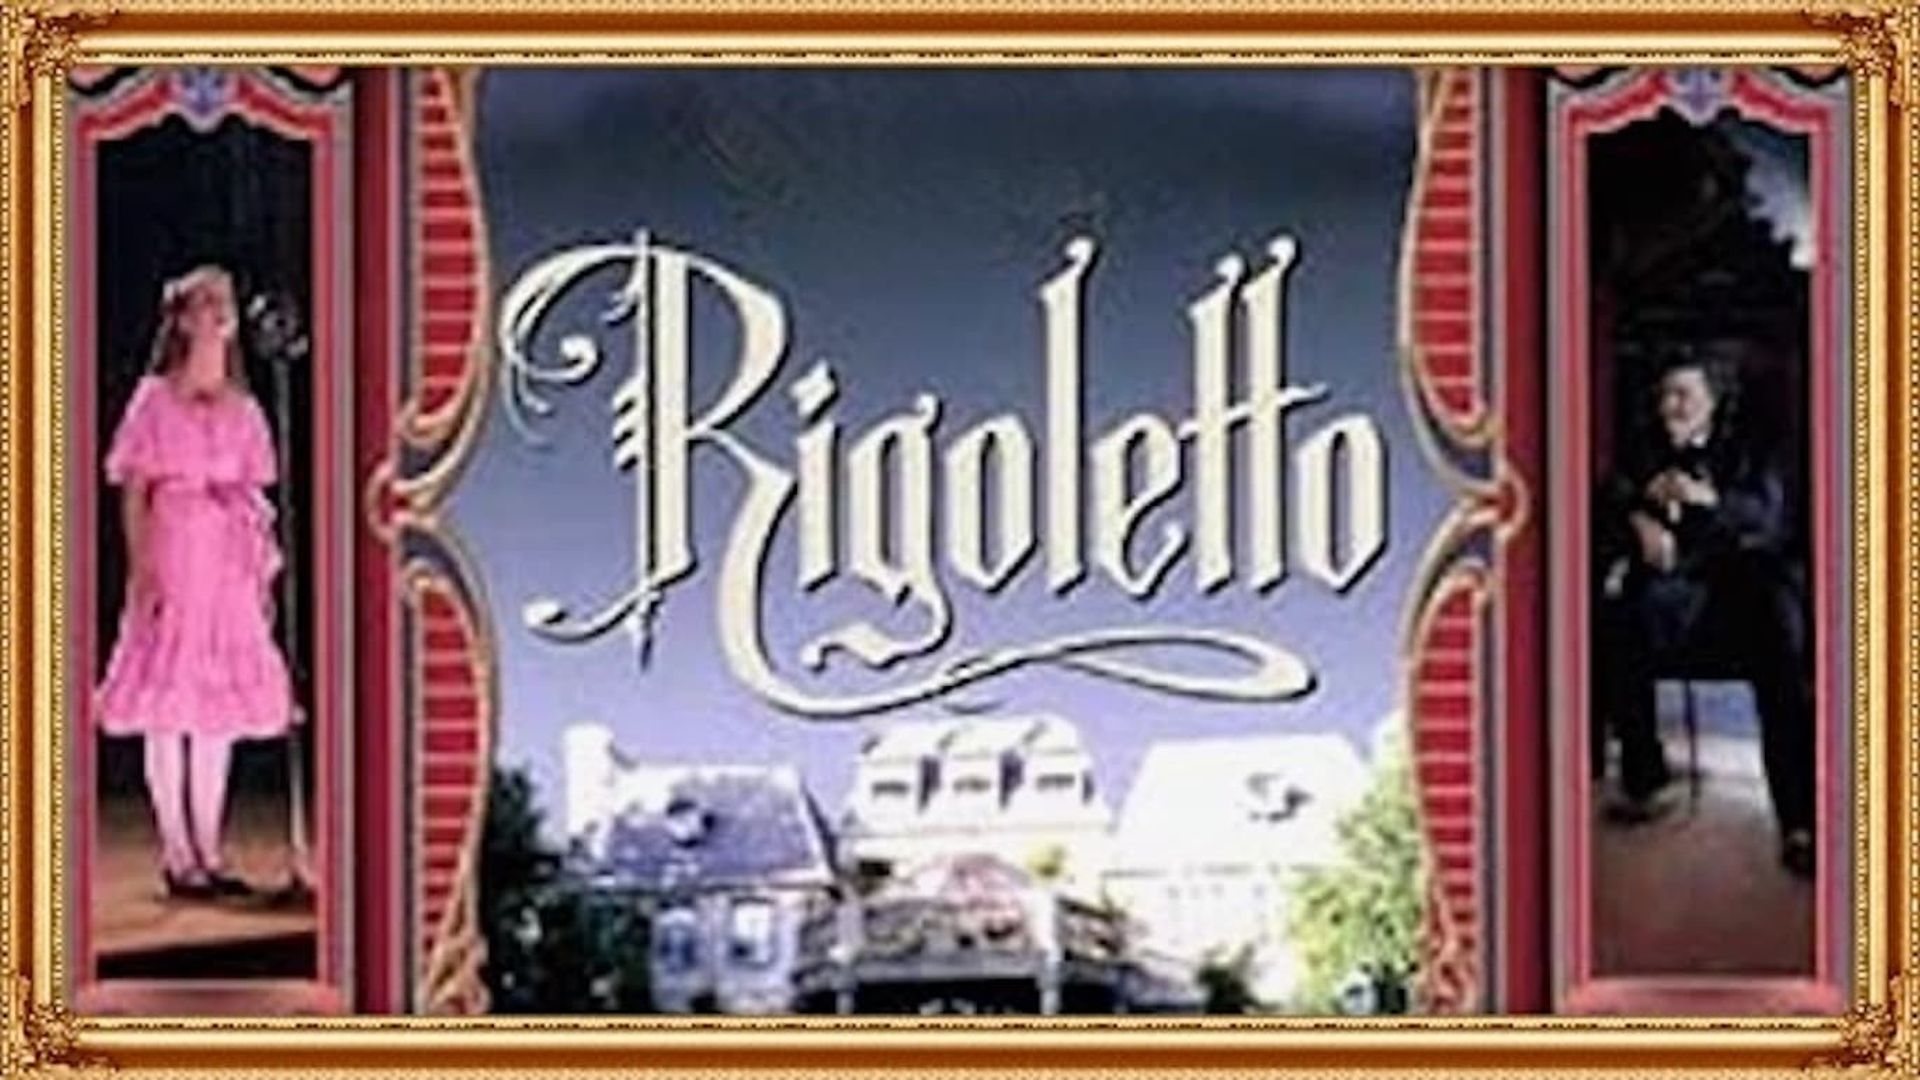 Rigoletto background